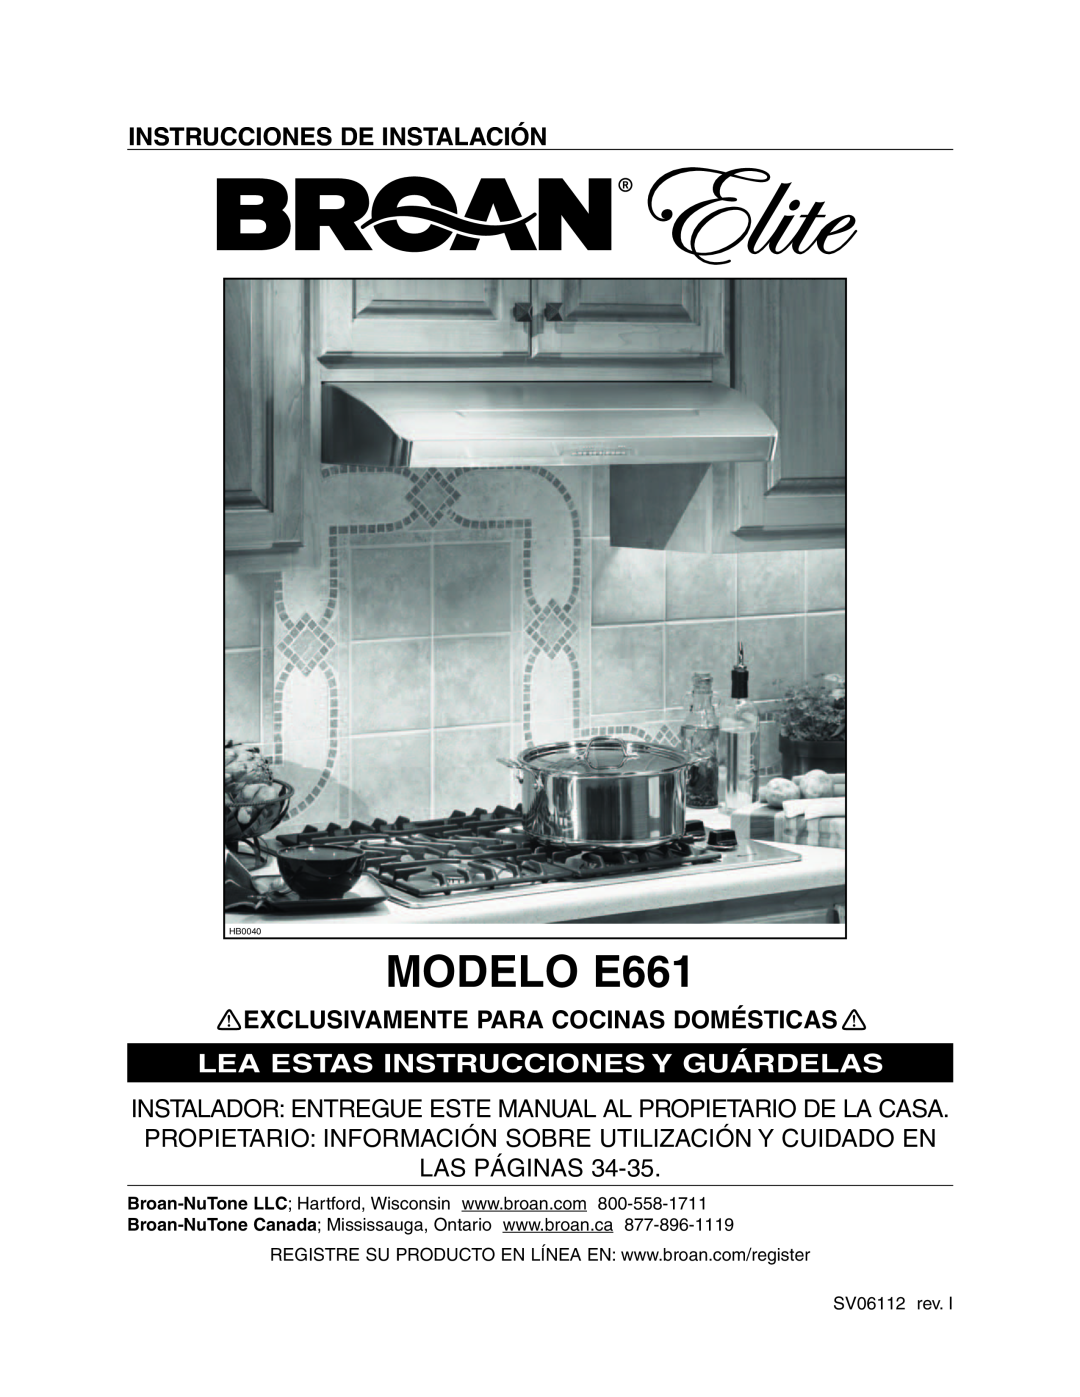 Broan E66142SS MODELO E661, Instrucciones De Instalación, Exclusivamente Para Cocinas Domésticas, SV06112 rev, HB0037 